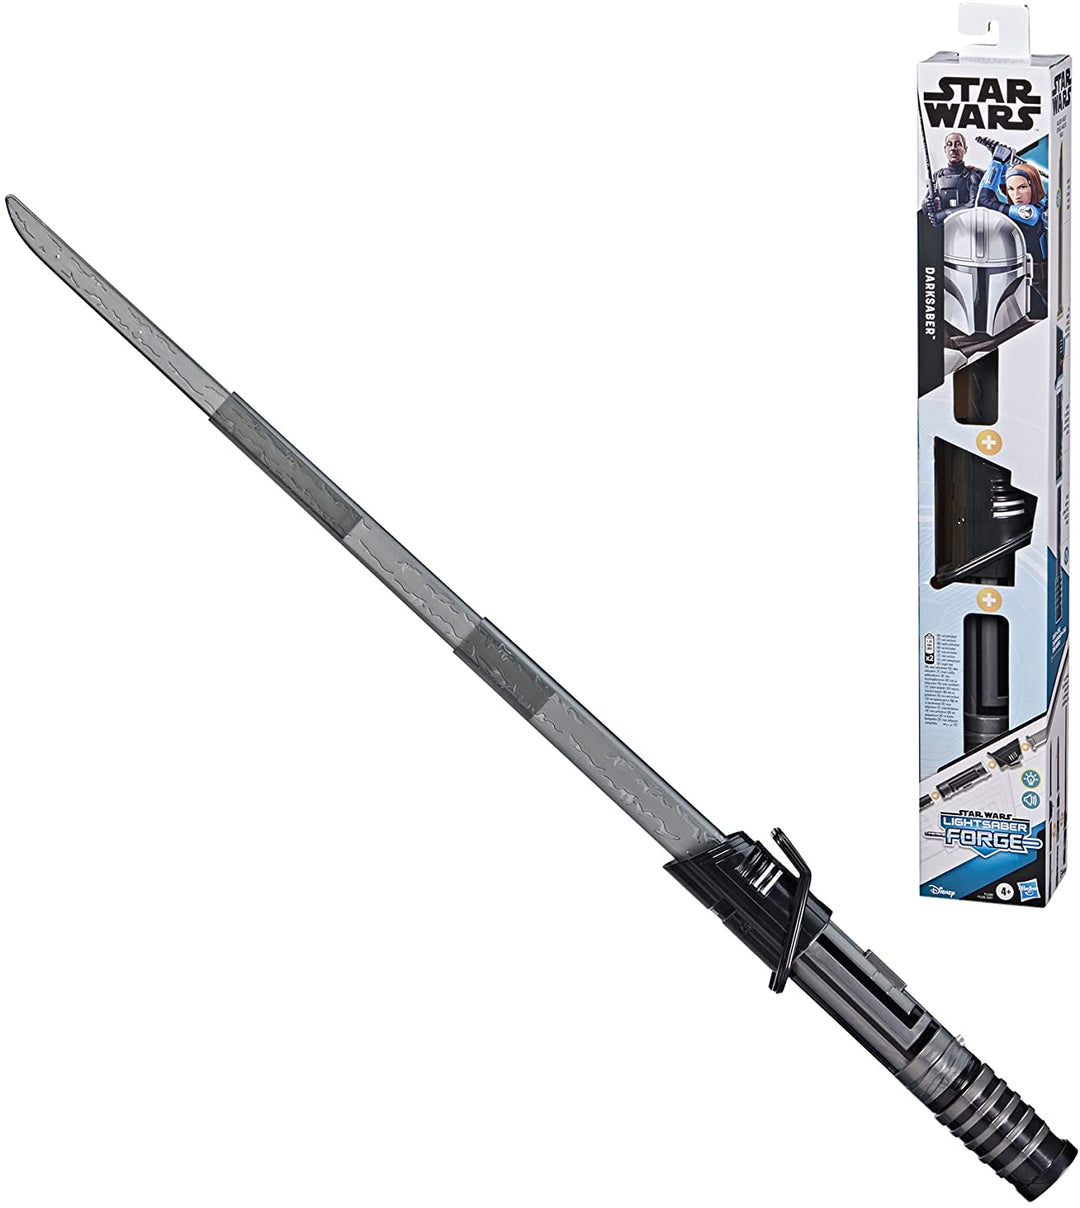 Hasbro Star Wars Lichtschwert Forge Darksaber Elektronisches ausziehbares schwarzes Lichtschwert